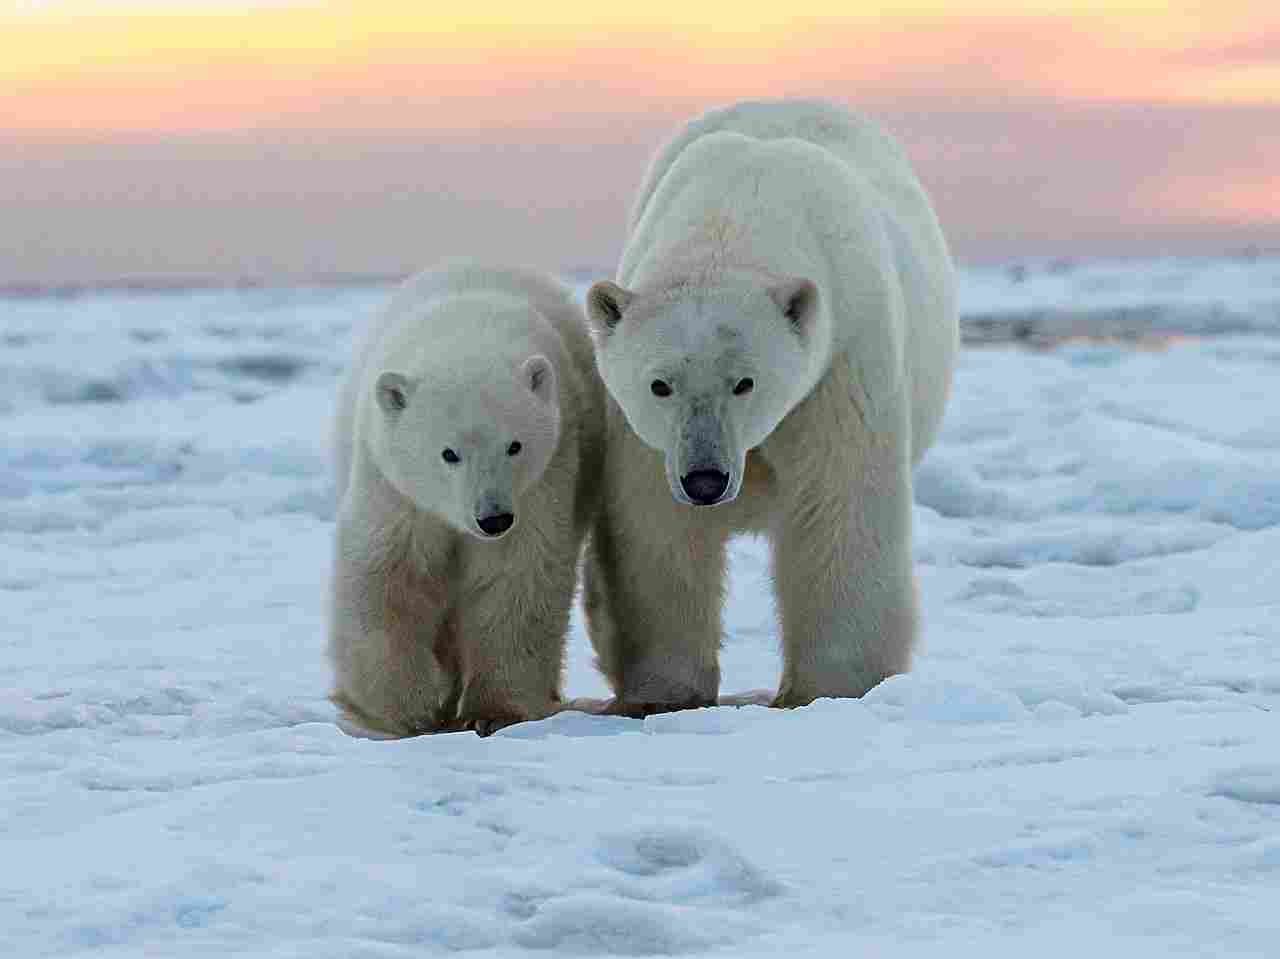 Kodiak bear vs Polar bear